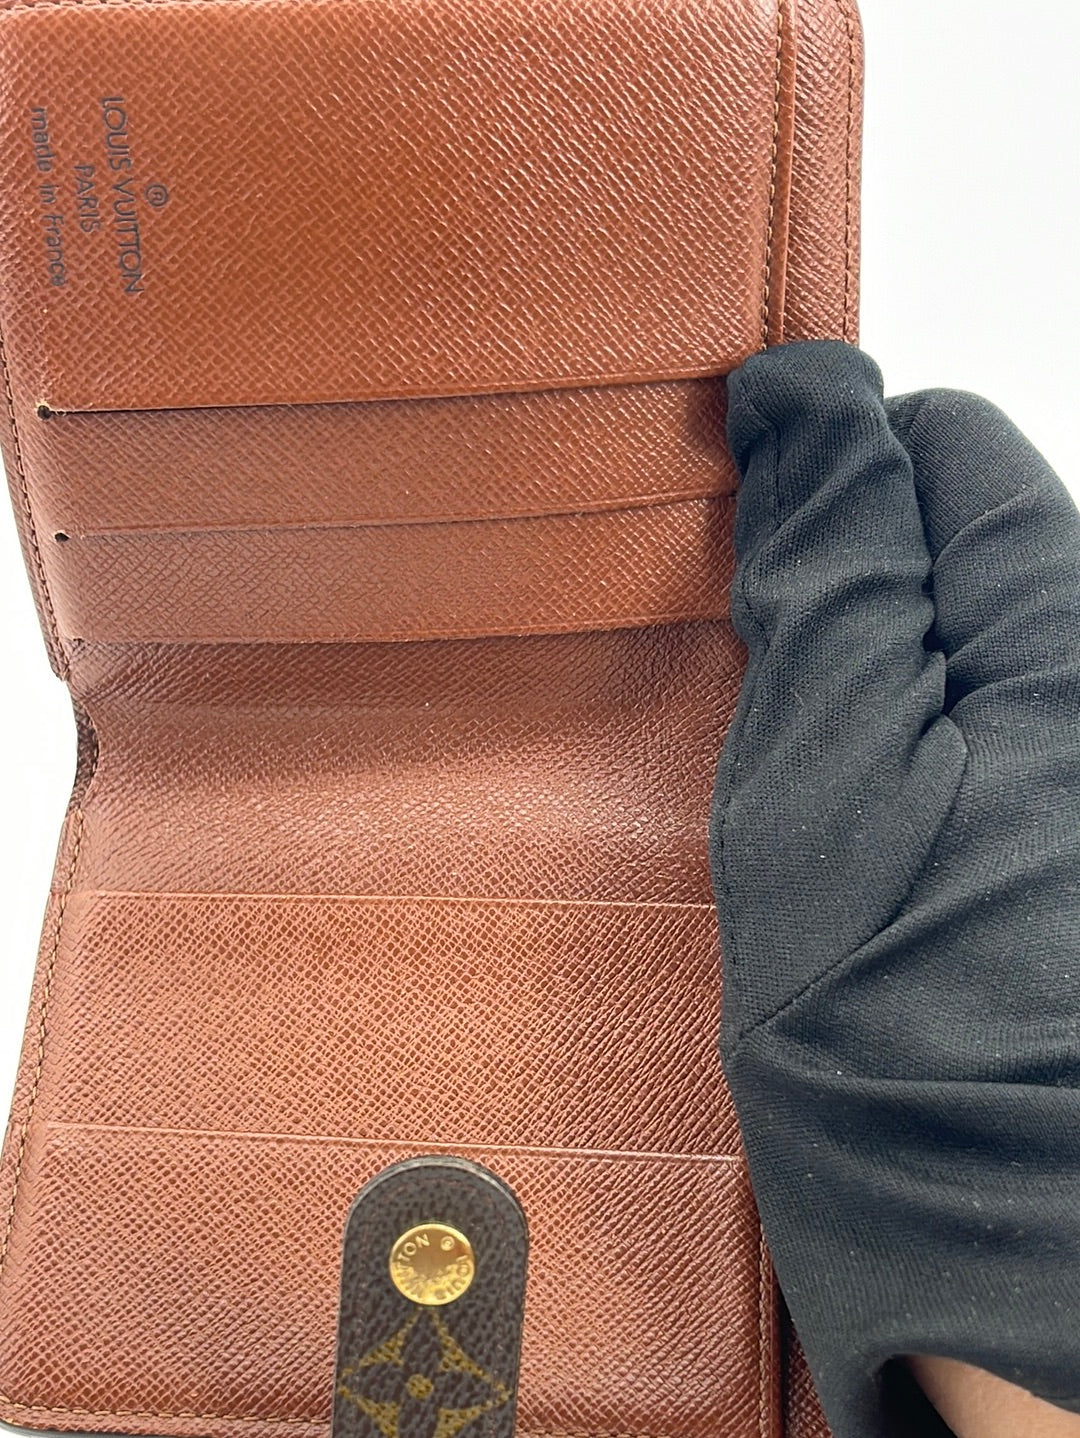 Lot 146 - Louis Vuitton Monogram Bi-Fold Wallet